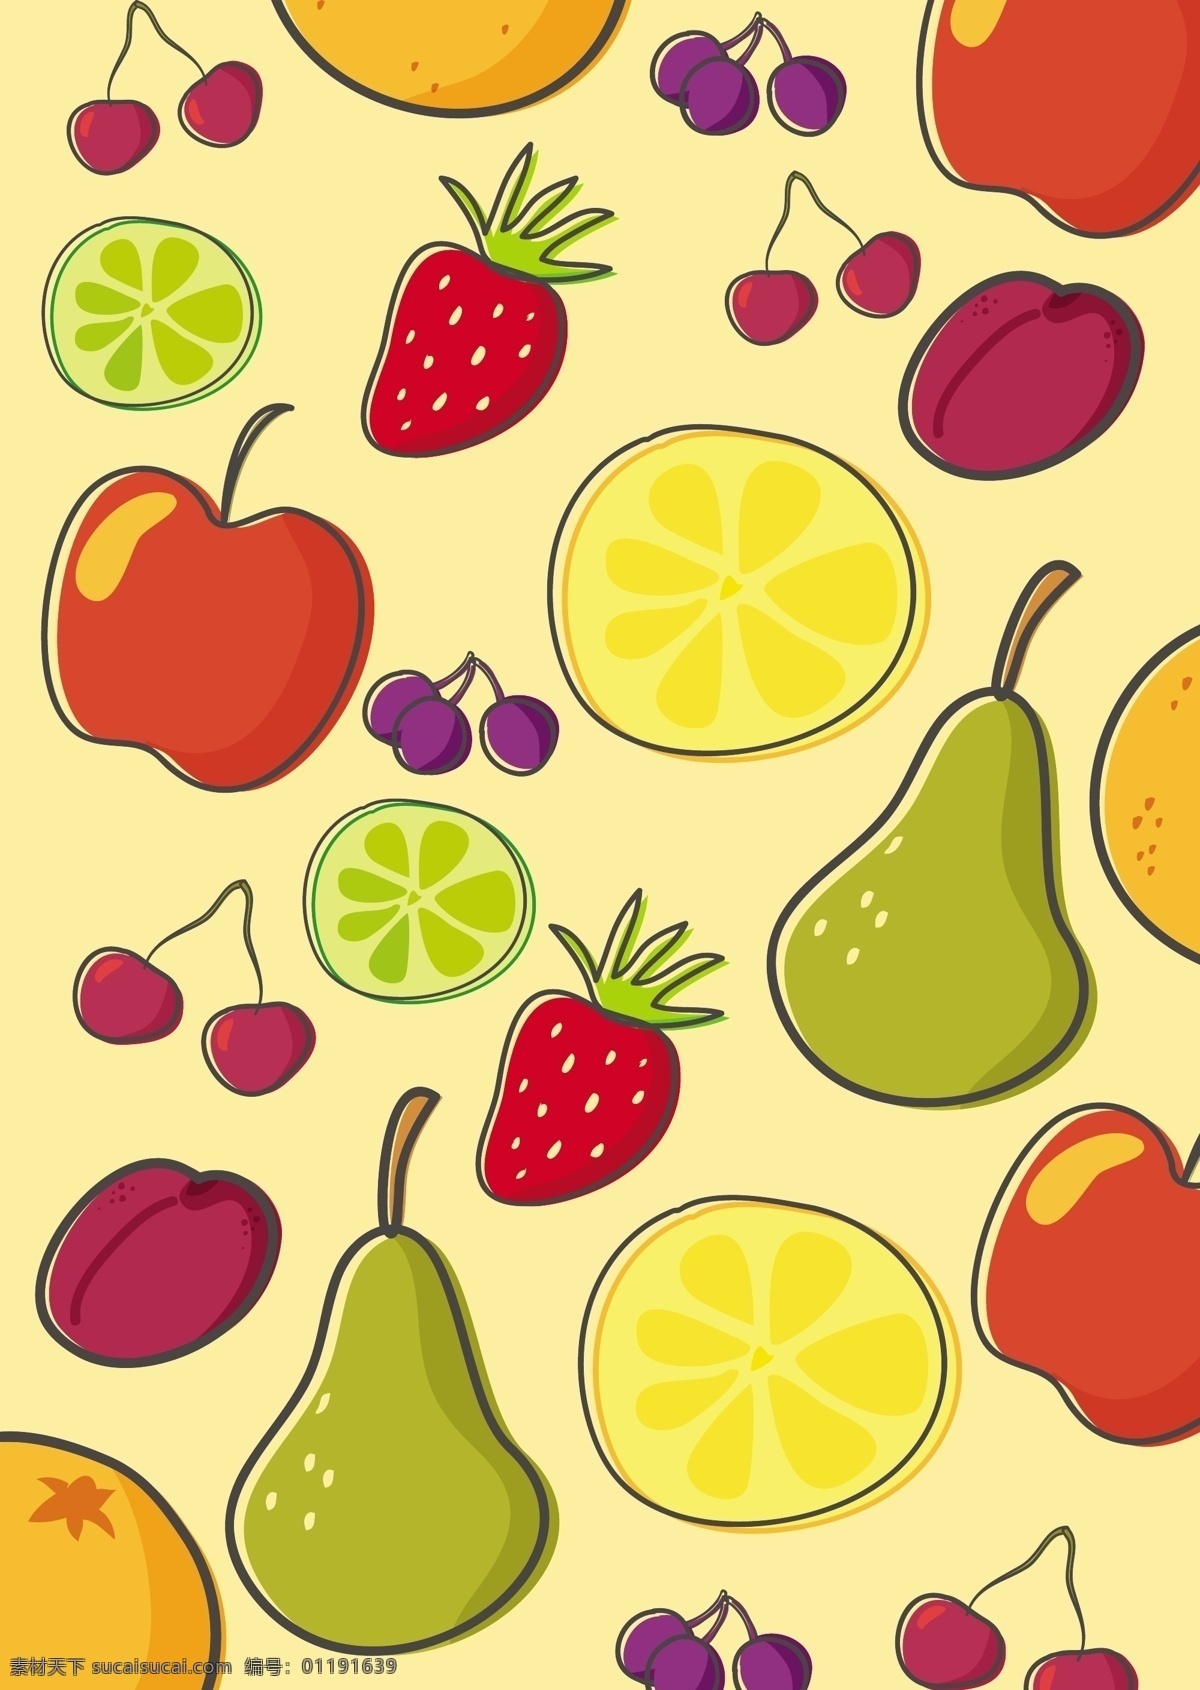 新鲜 水果 矢量图 广告背景 背景素材 广告 背景 矢量 草莓 苹果 樱桃 雪梨 柠檬 橙子 水果背景 新鲜水果